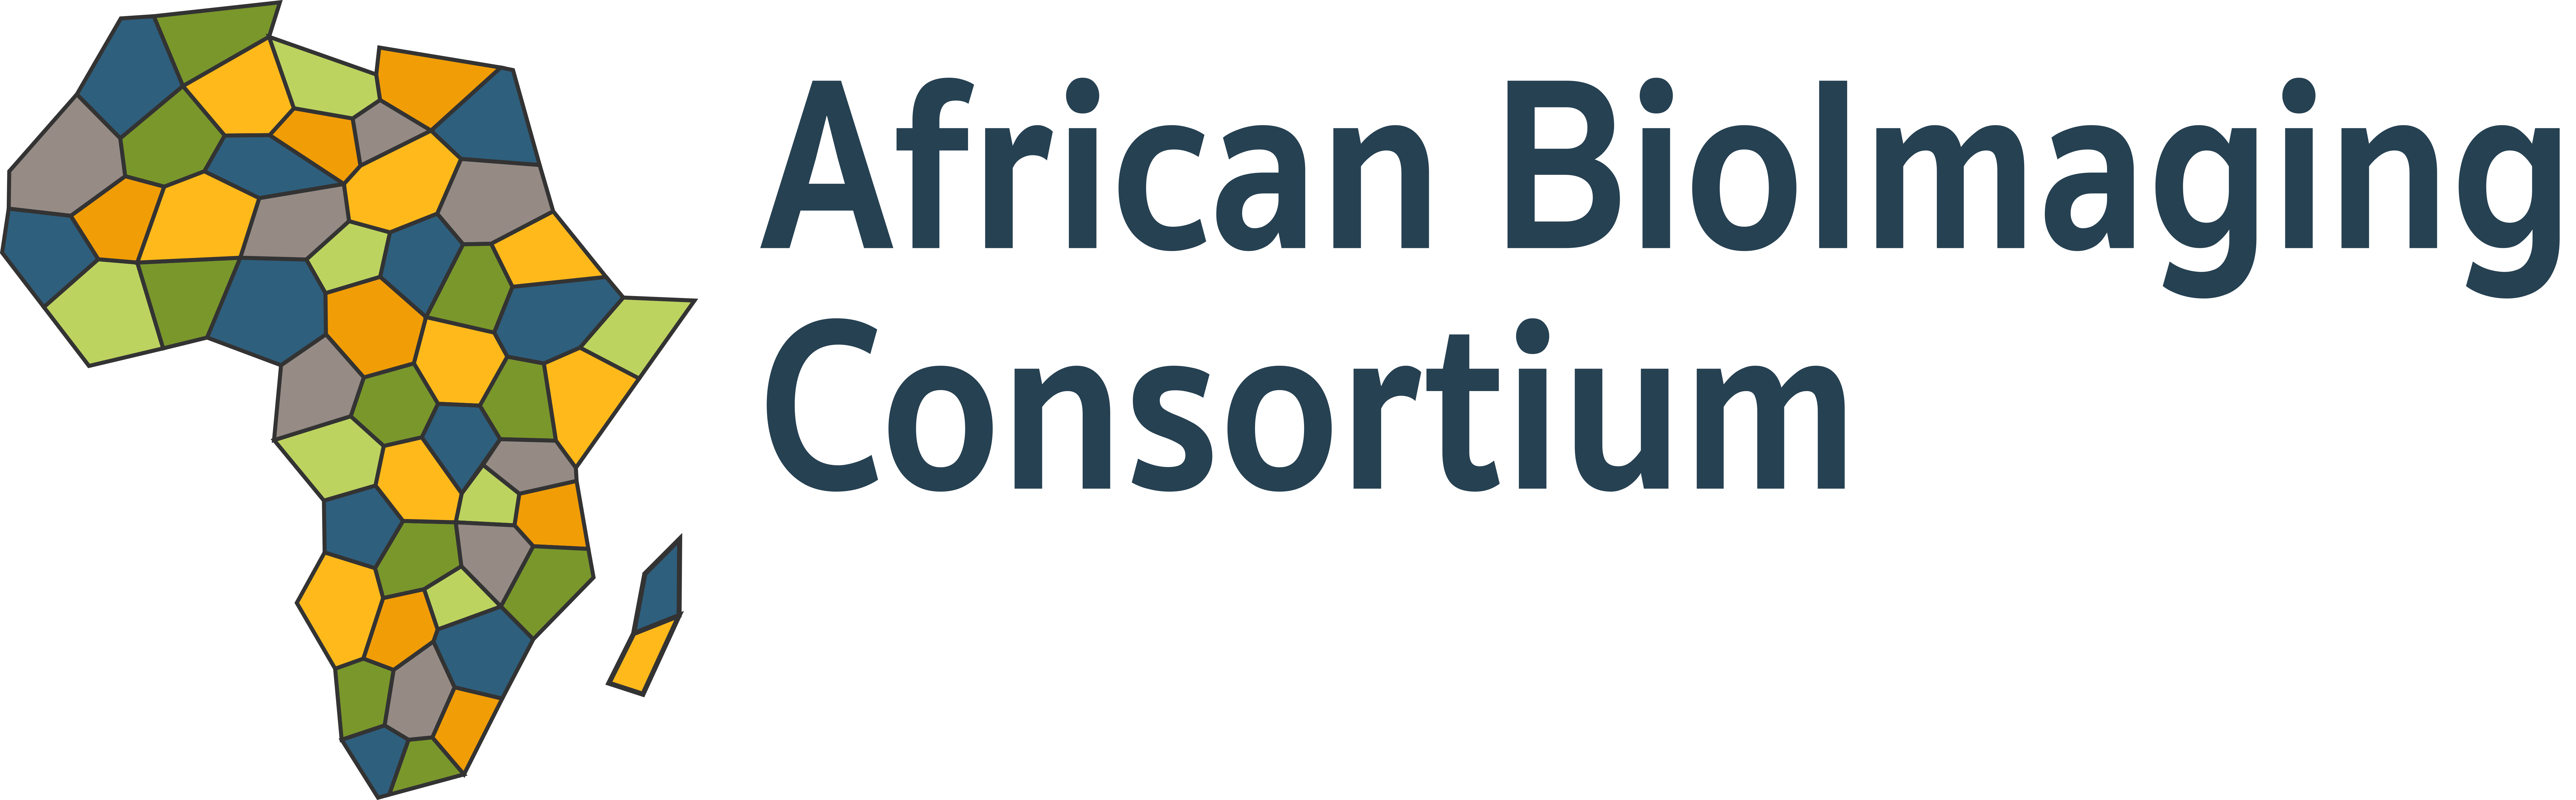 Africa Bioimaging Consortium logo